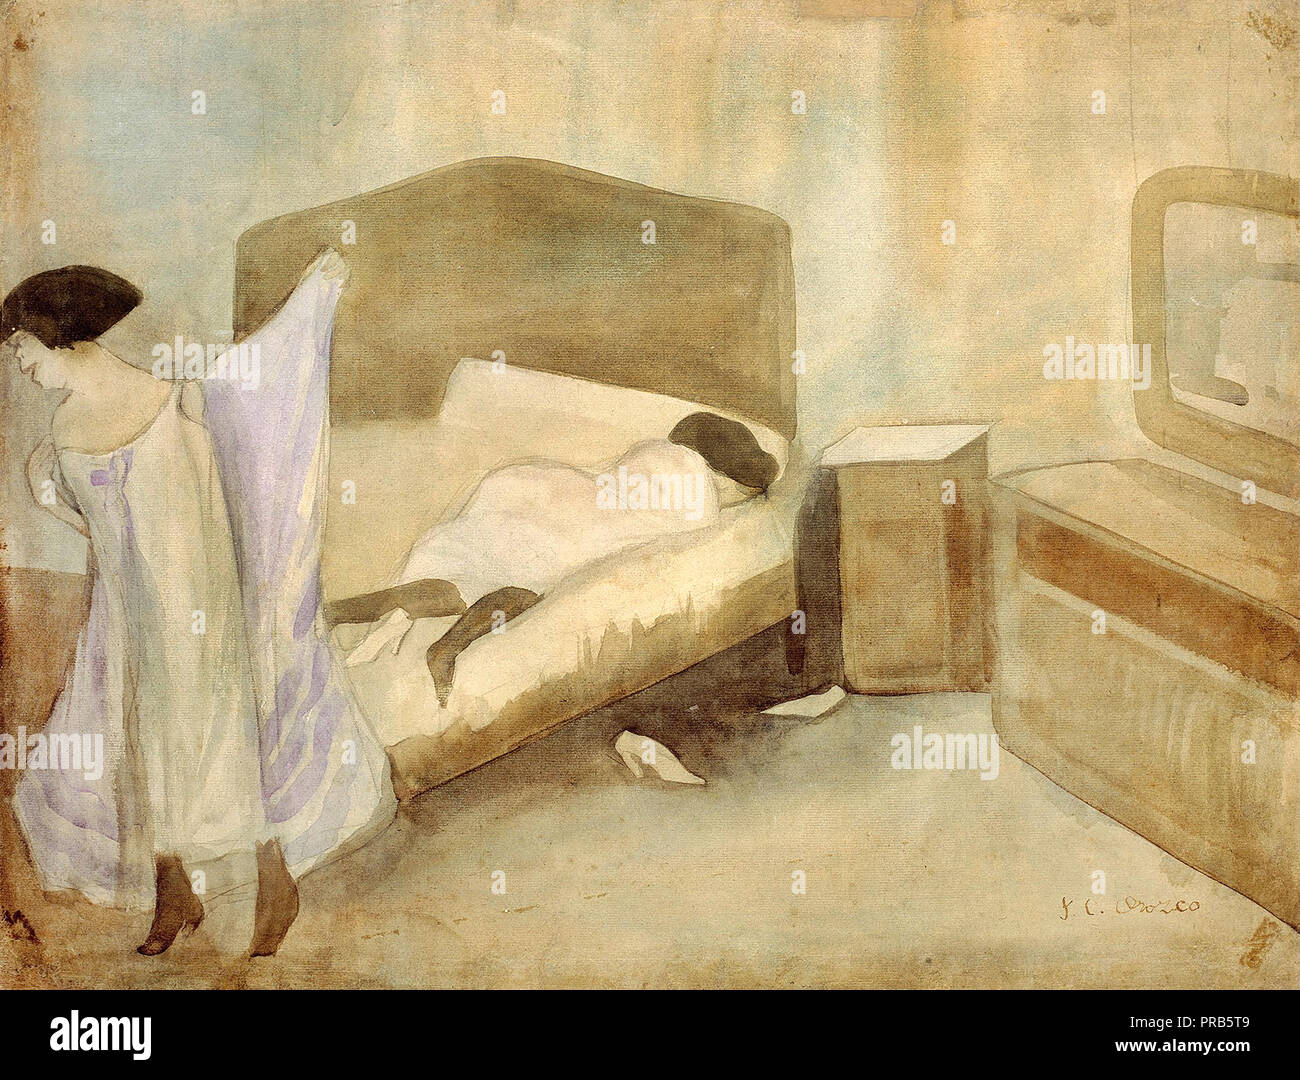 Jose Clemente Orozco, la chambre à coucher, circa 1910 aquarelle sur papier, Museo Nacional de Arte, Mexico, Mexique. Banque D'Images